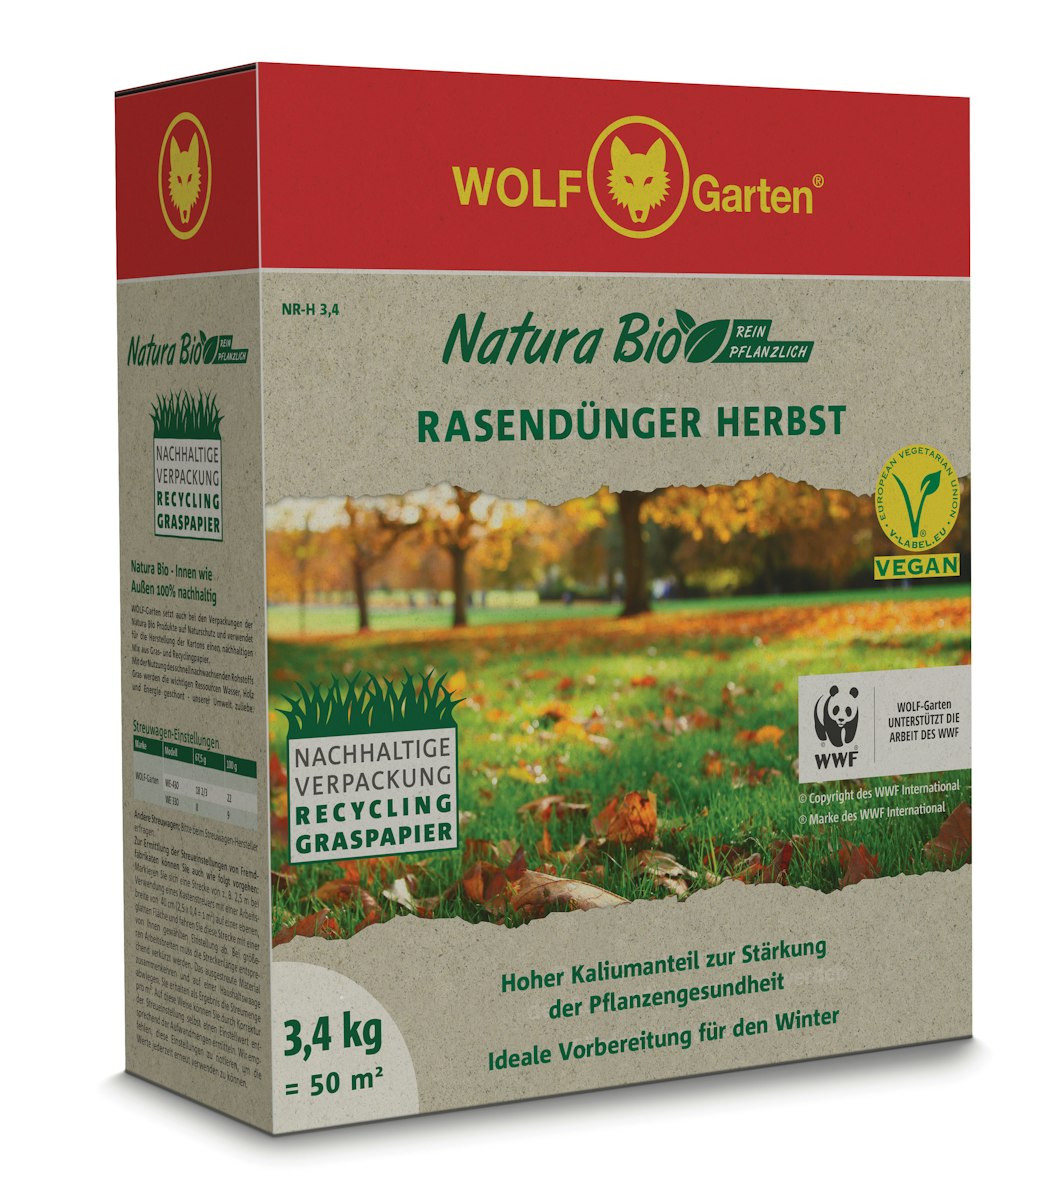 WOLF-Garten - Rasendünger Herbst NR-H 3,4 von WOLF-Garten